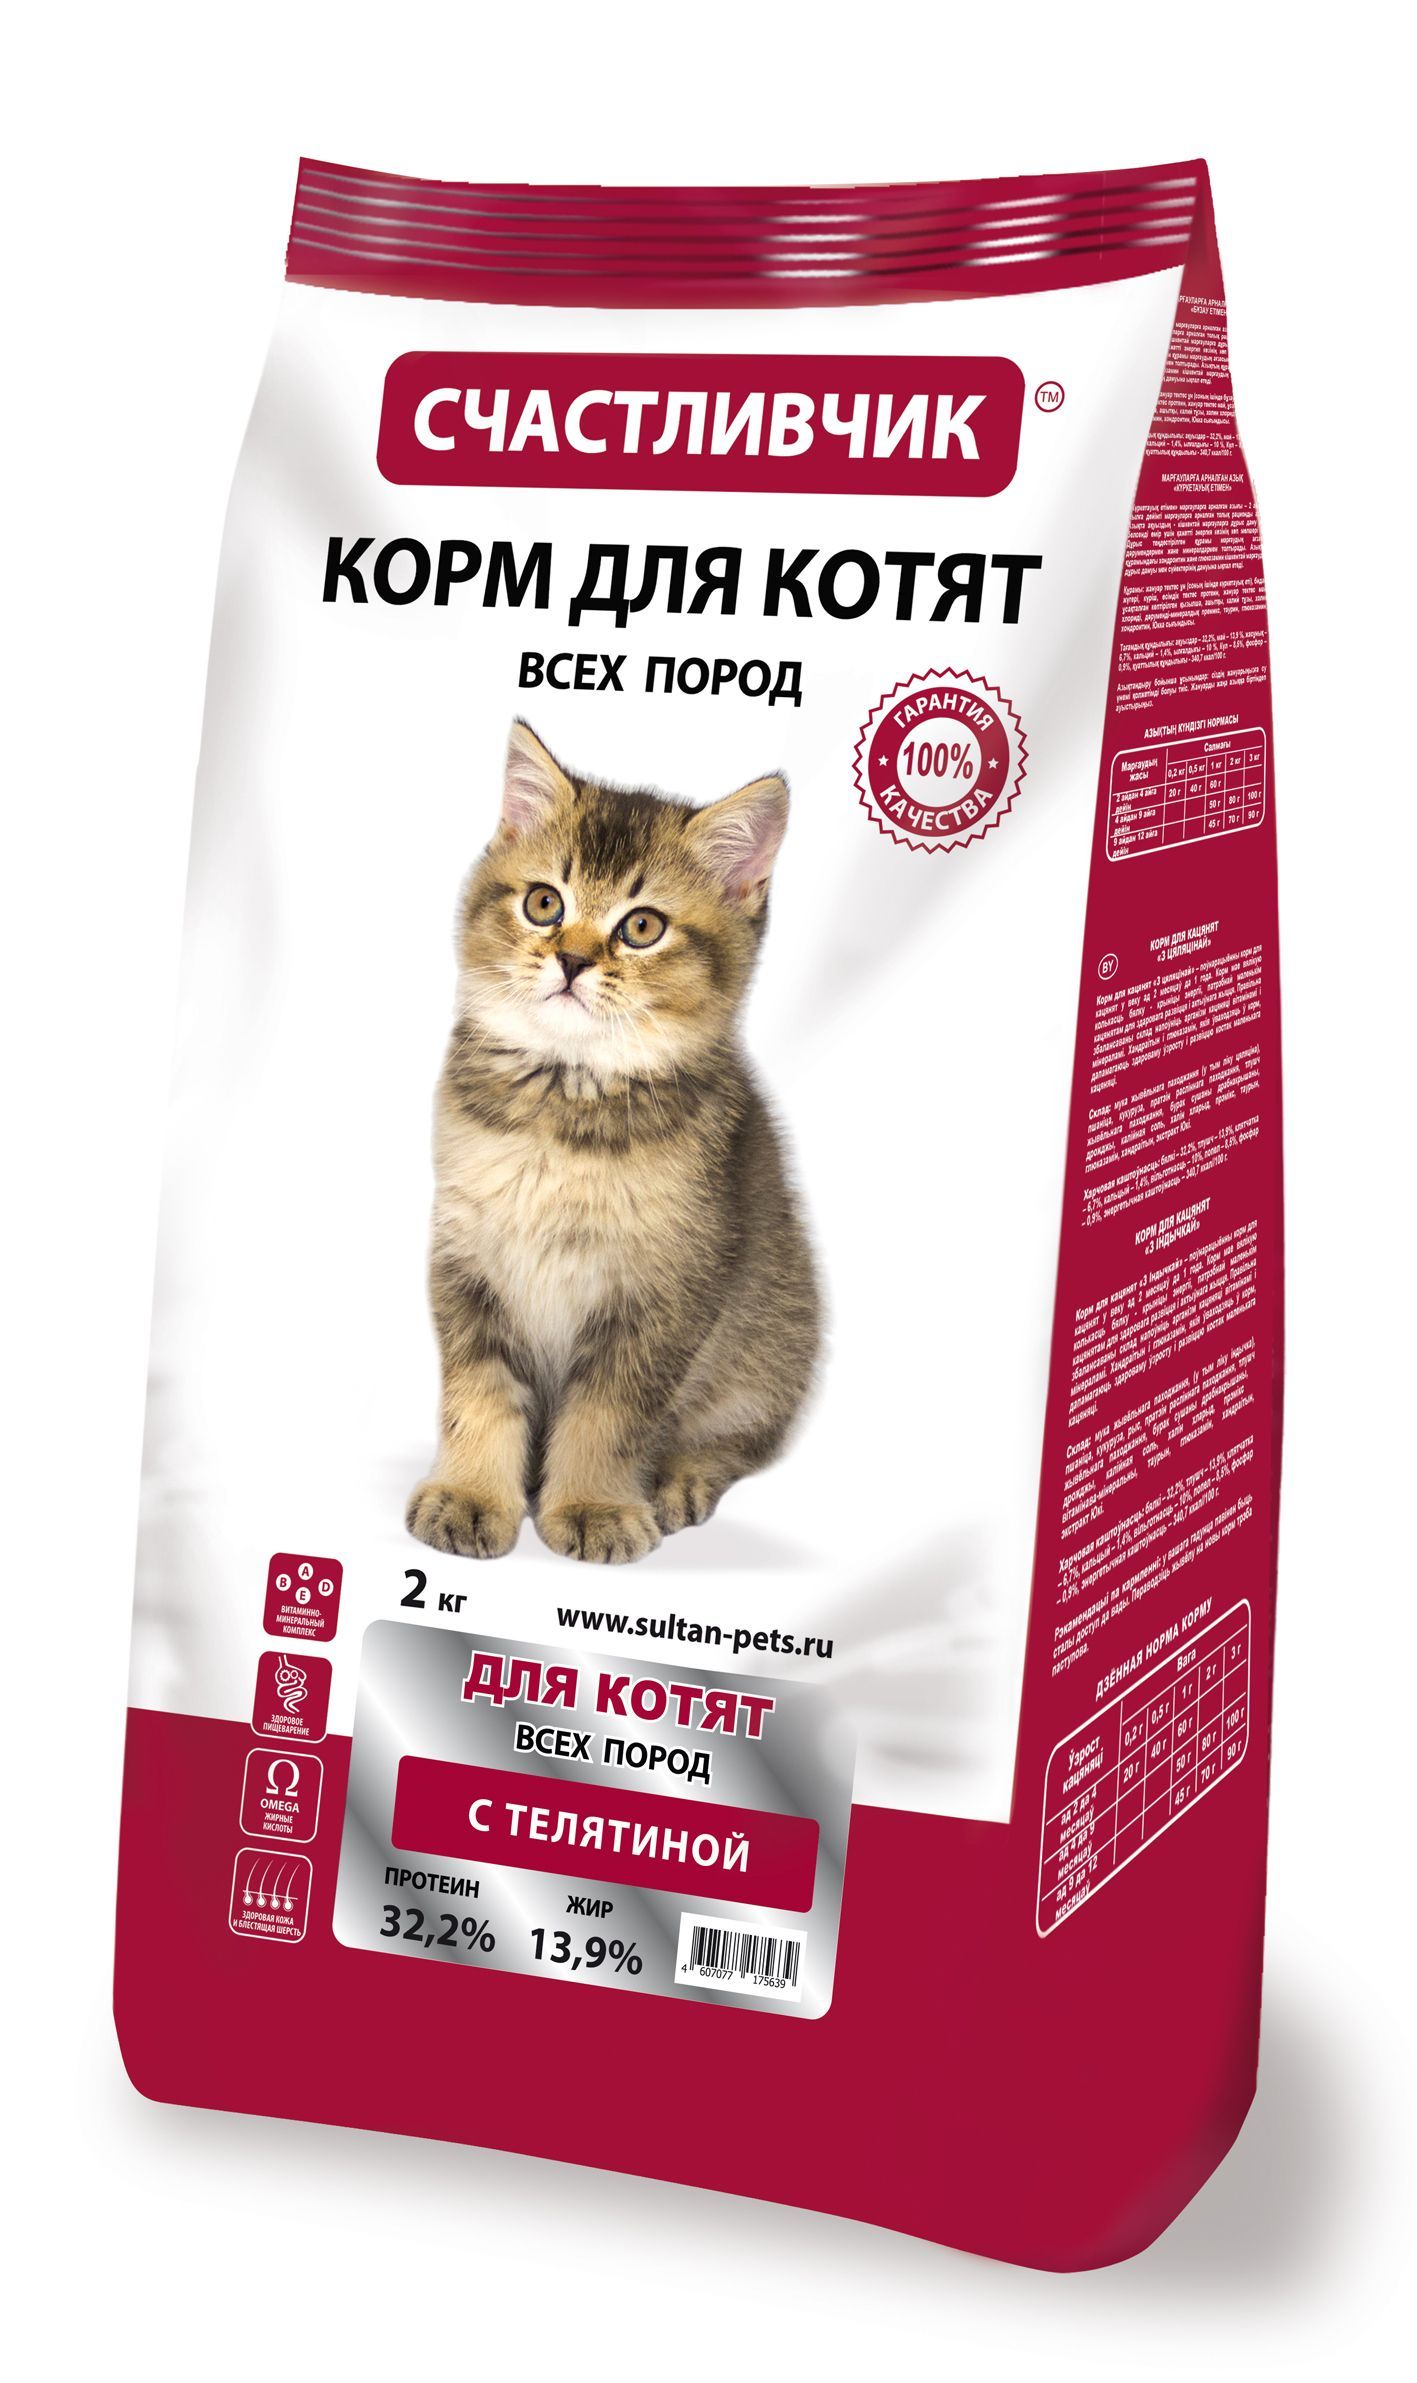 СЧАСТЛИВЧИК сухой корм для котят с телятиной 2кг фото, цены, купить